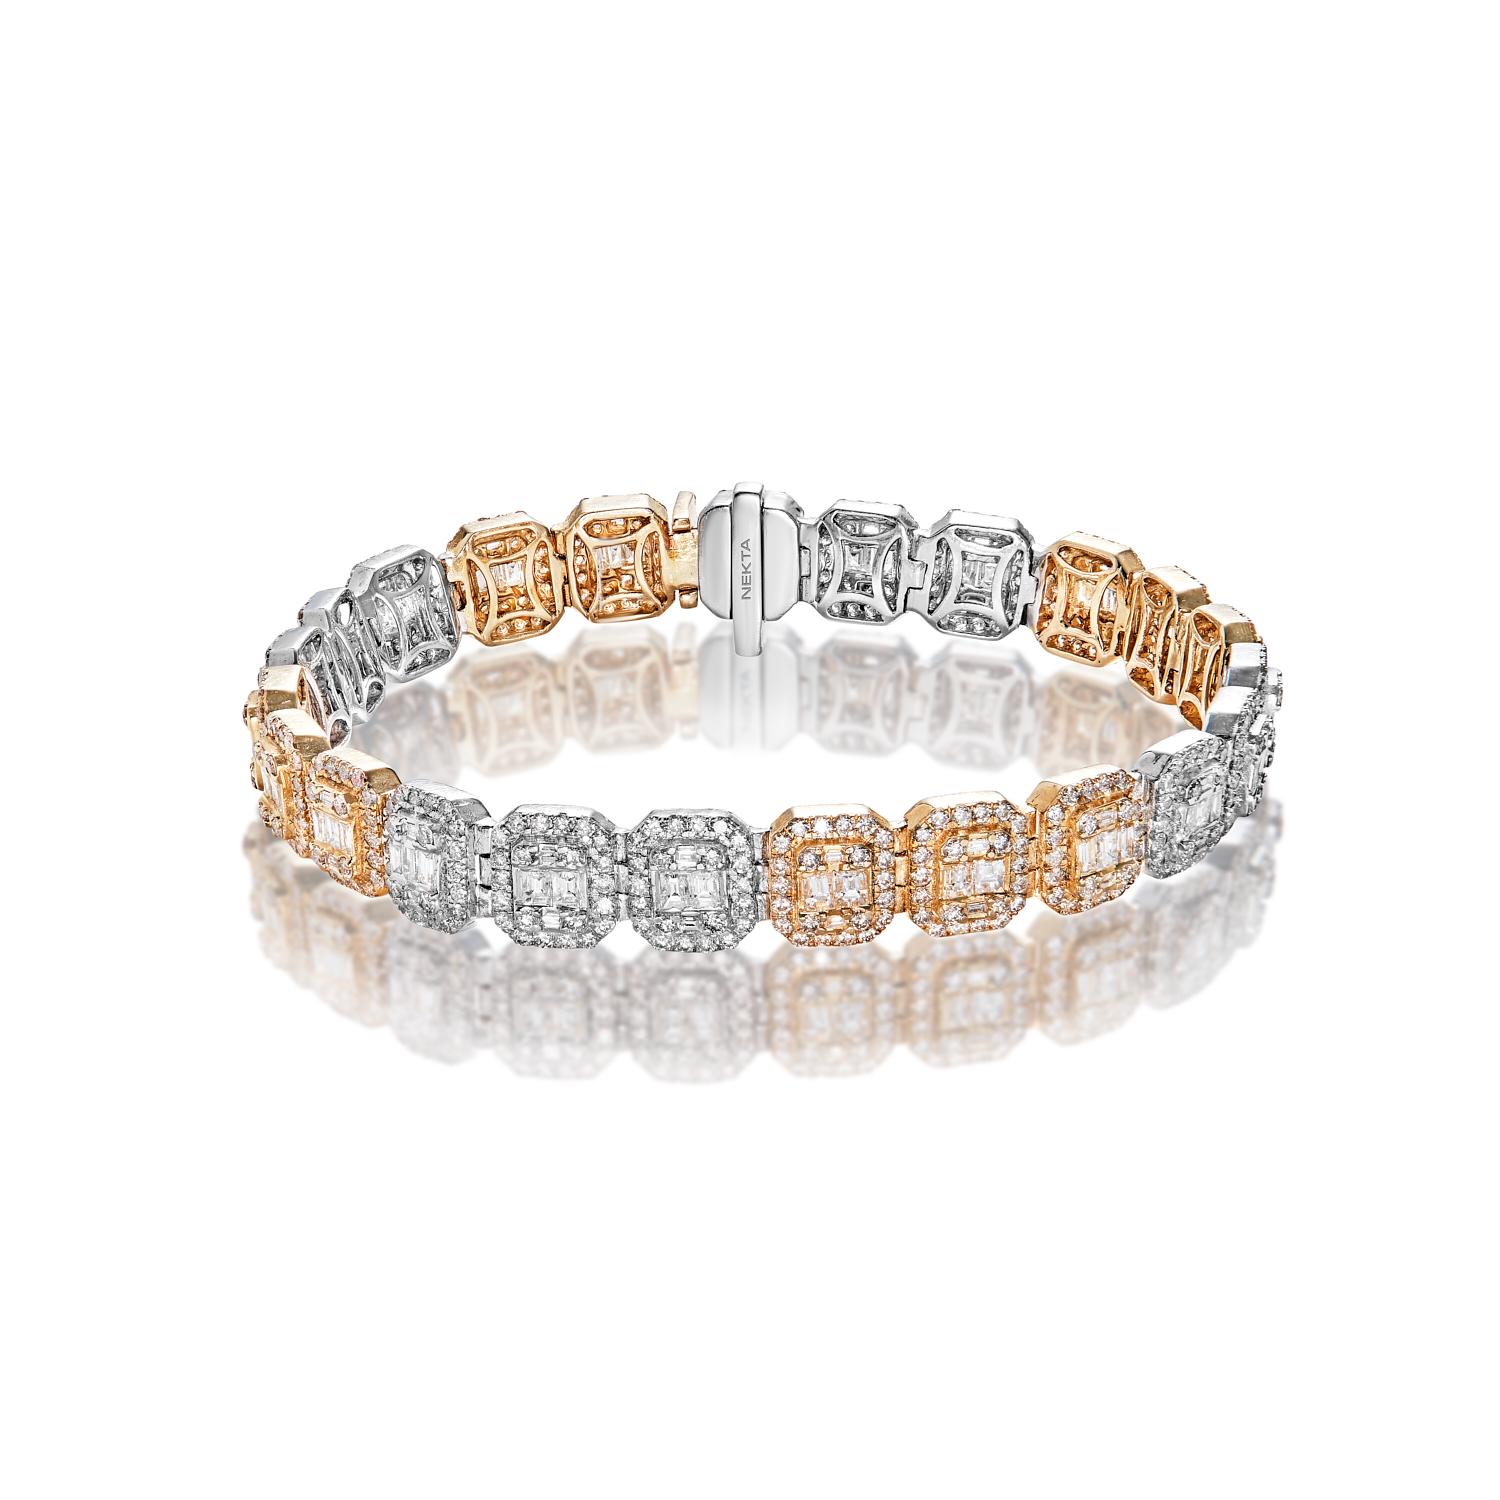 Le bracelet pour homme Theodore 10 Carat Diamond Link Bracelet présente des DIAMONDS de forme mixte brillants pesant un total d'environ 10,21 carats, sertis dans de l'or blanc et jaune 14 carats.

Diamants
Taille du diamant : 10.21 carats
Forme de